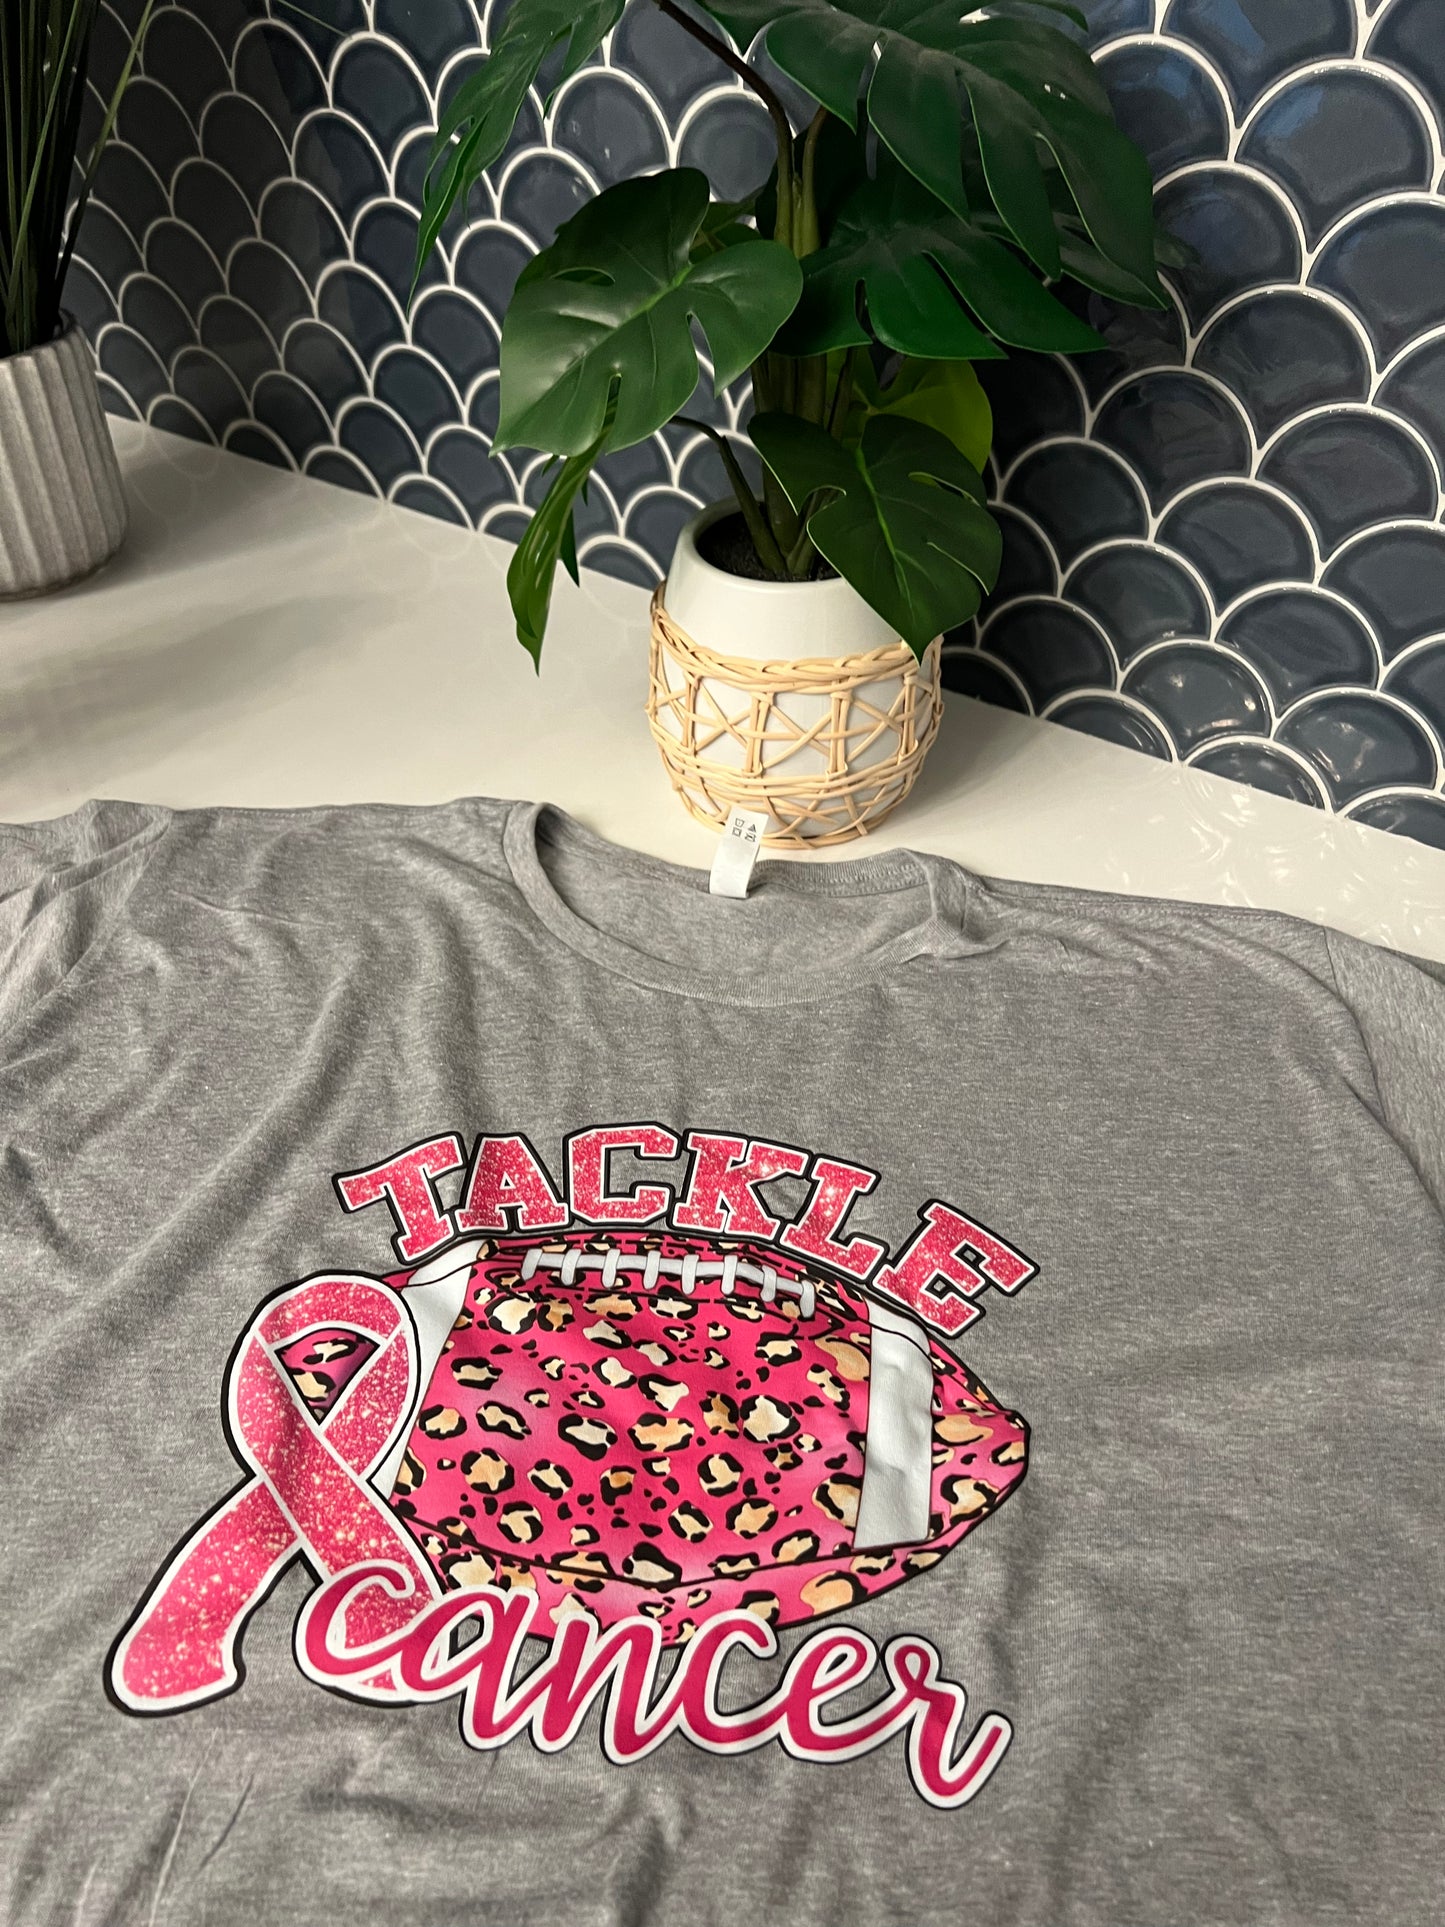 Tackle Cancer Pink Football tshirt